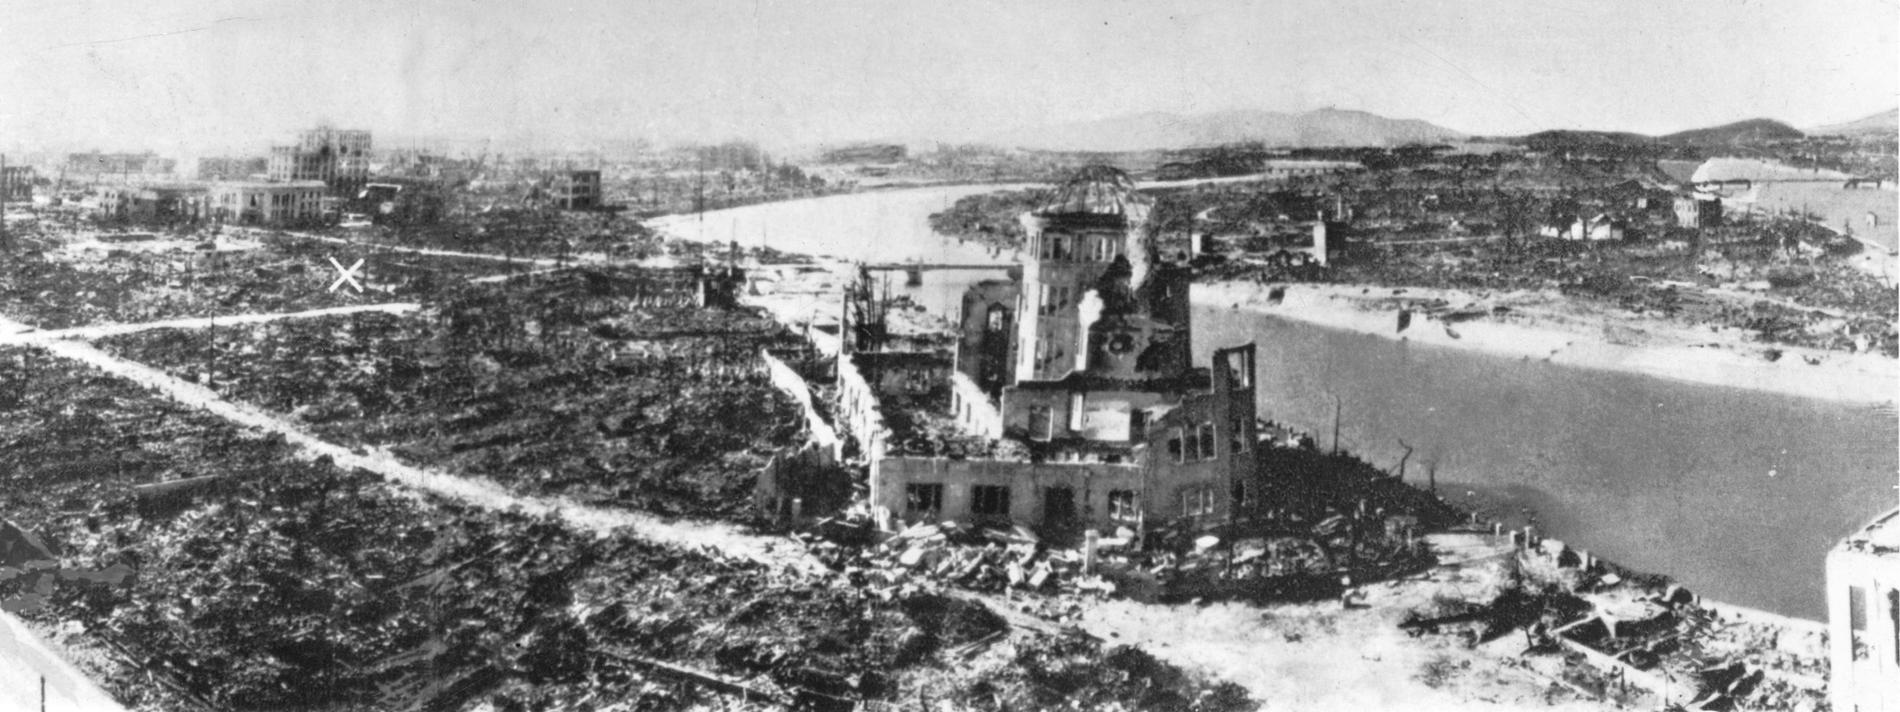 Förödelsen i Hiroshima, Japan, efter bombningen i augusti 1945. Det vita krysset till vänster visar nedslagsplatsen.